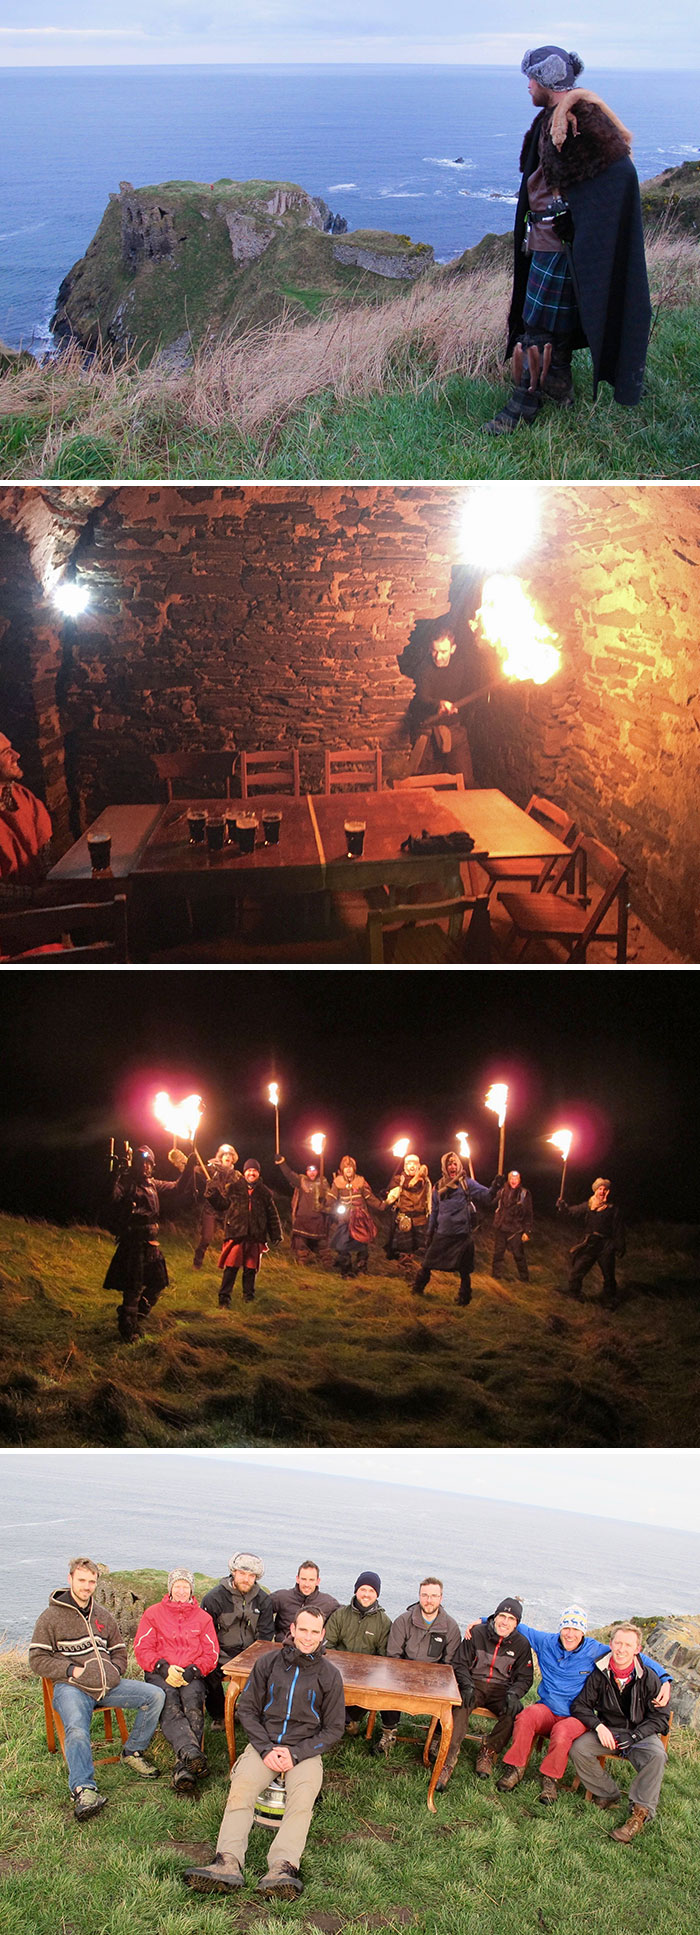 Mis locos amigos escoceses organizaron una despedida de soltero sorpresa a su amigo. Un festín vikingo en un castillo escocés en ruinas